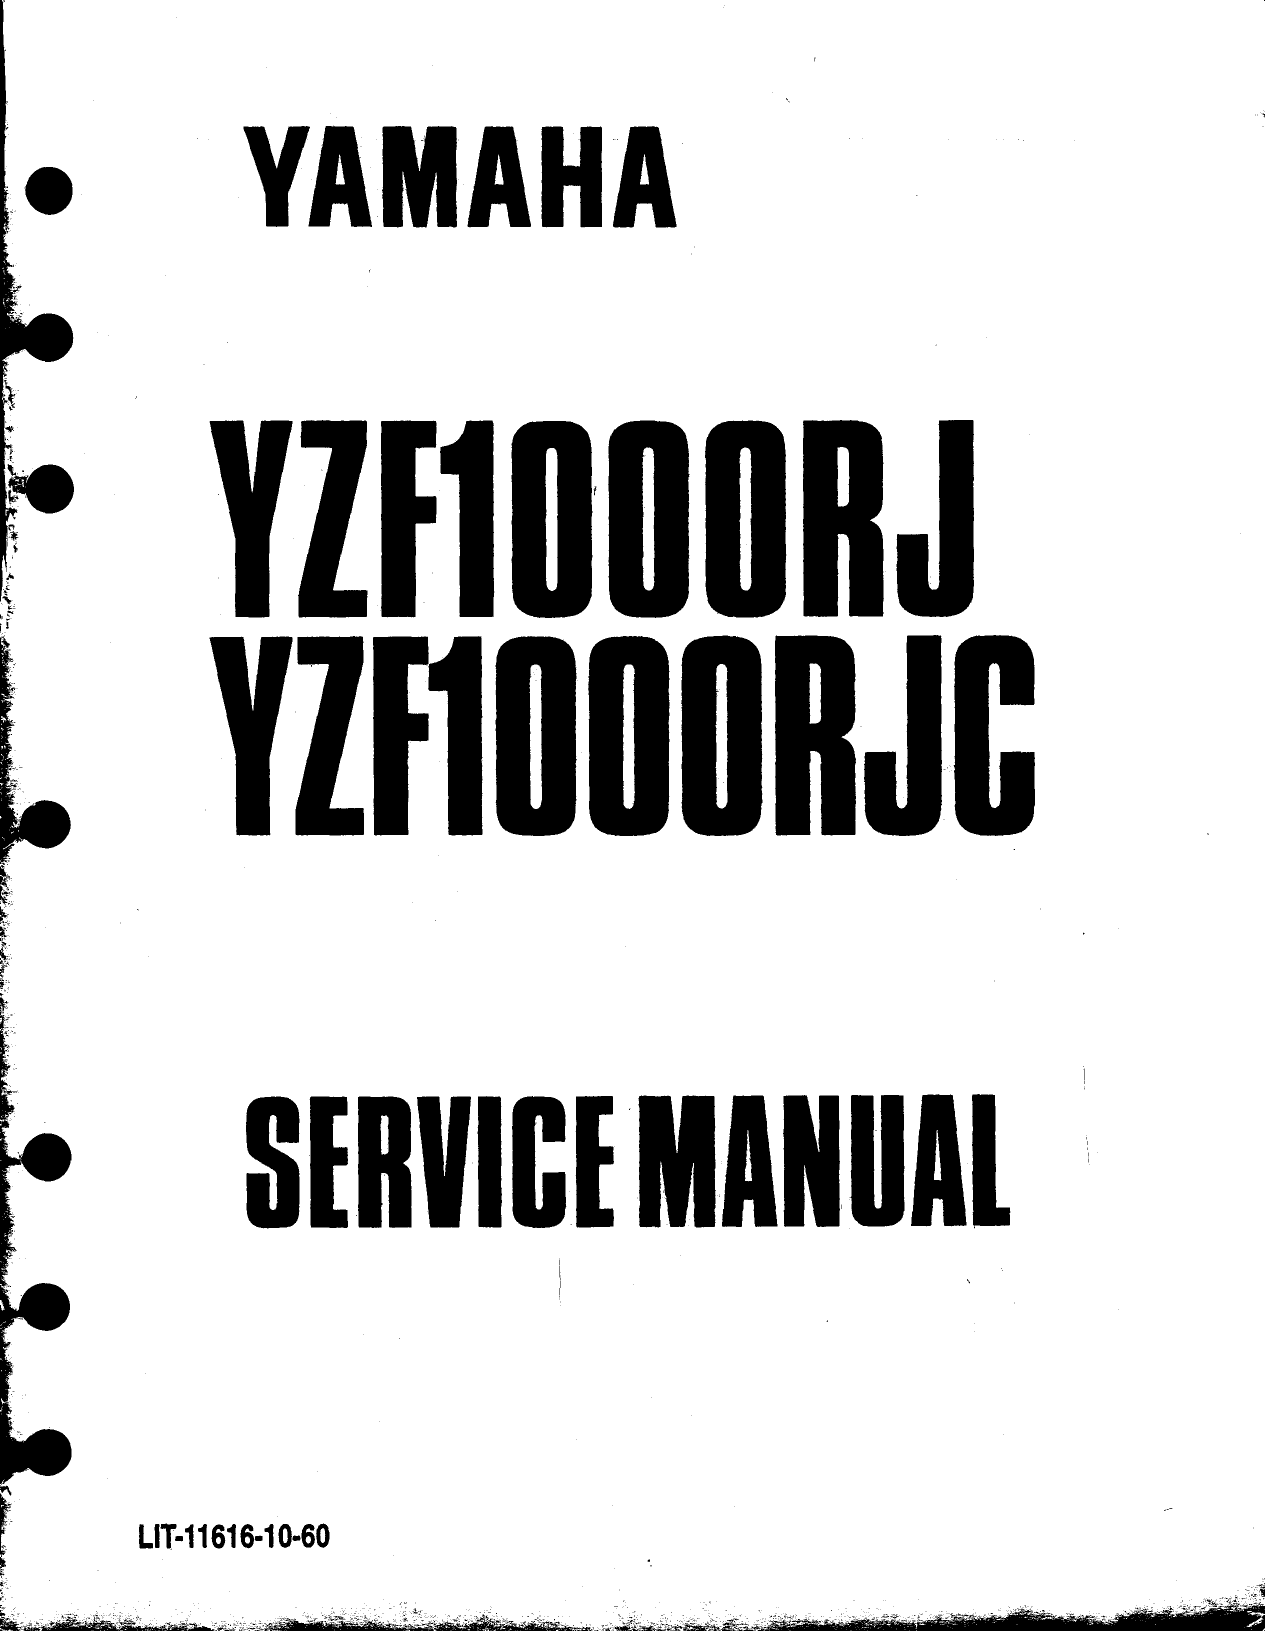 1996-2004 Yamaha YZF1000RJ, YZF1000RJC manual Preview image 6